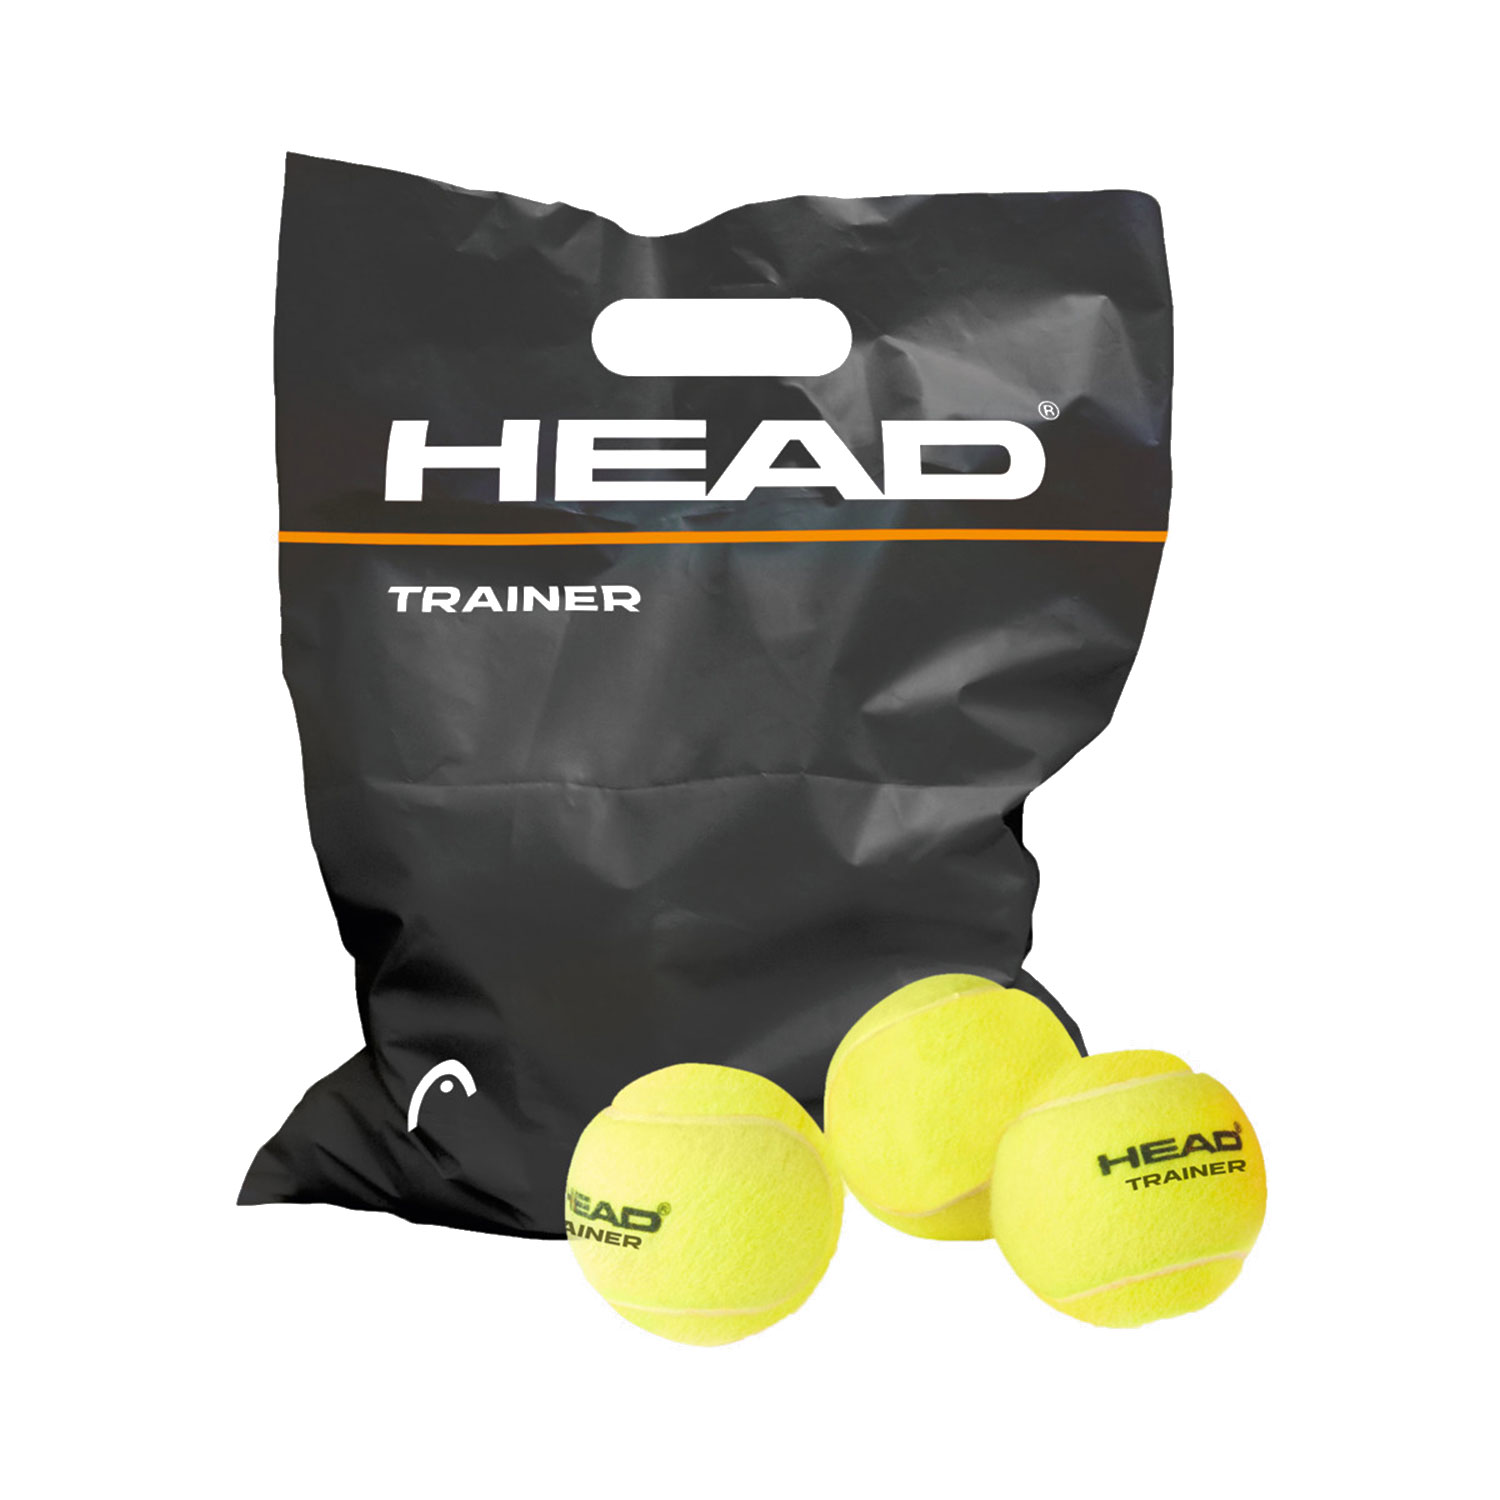 Head Trainer - Bag of 72 Balls